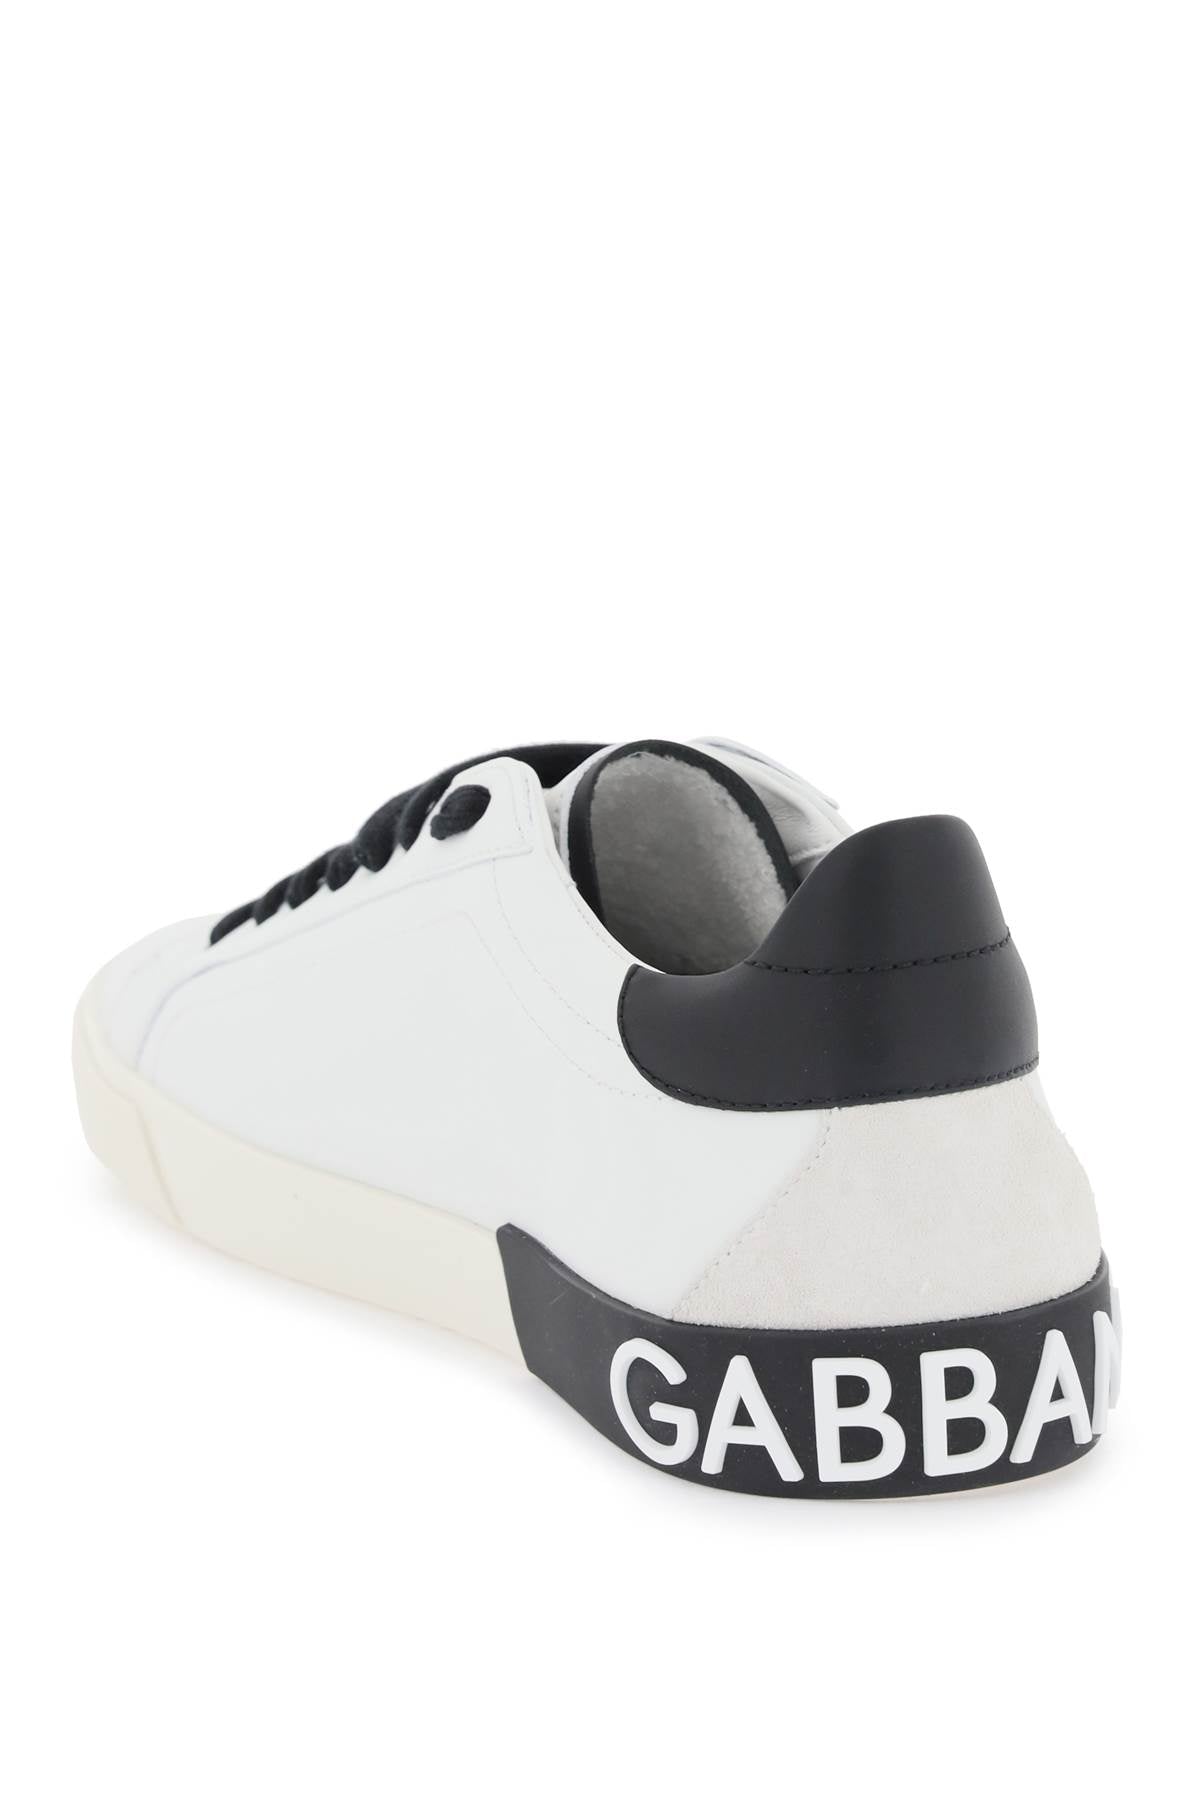 Dolce & gabbana nappa leather portofino sneakers-2